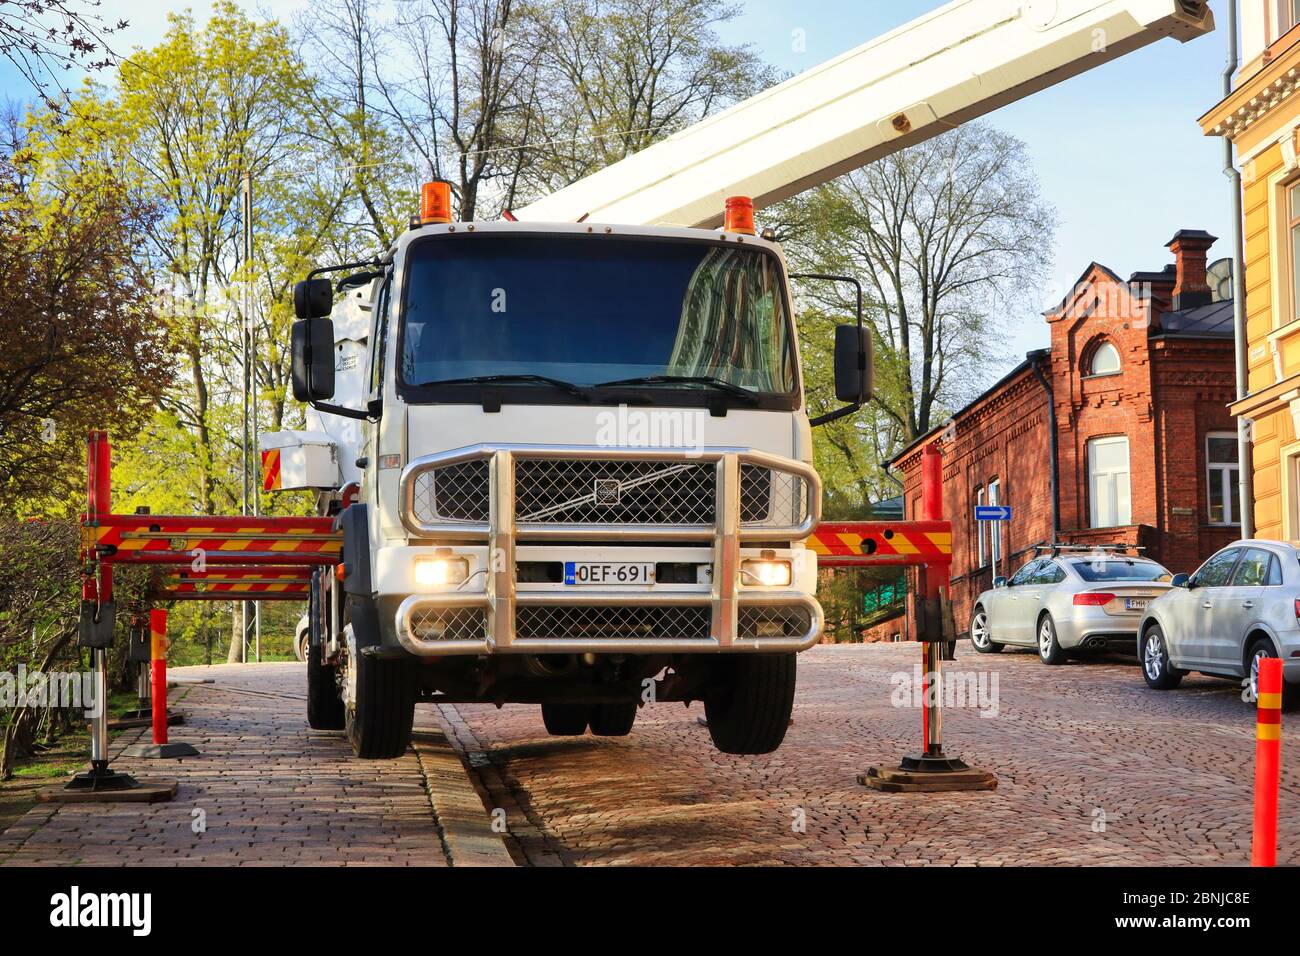 Volvo Kranwagen angehoben auf Stützen, halten das Fahrzeug stabil und ausgeglichen während des Betriebs. Helsinki, Finnland. 13.Mai 2020 Stockfoto